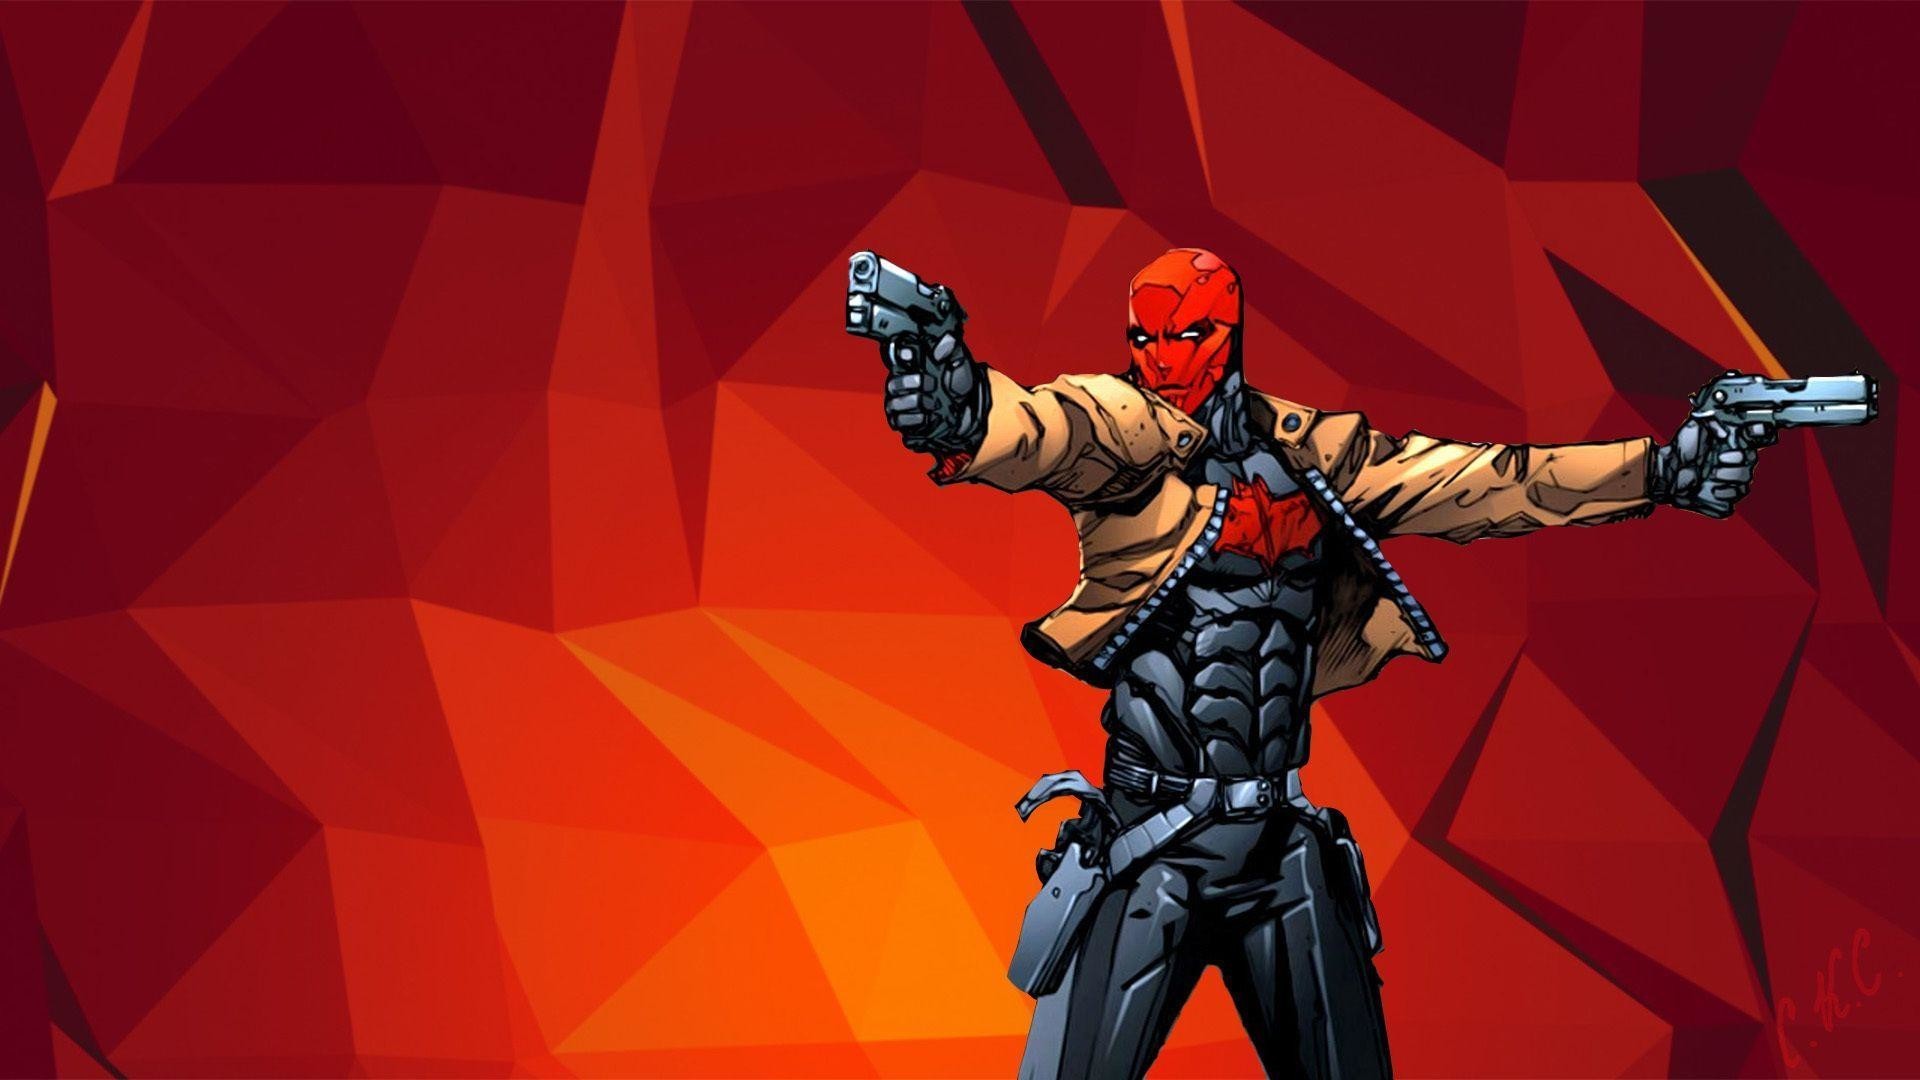 cappa rossa hd wallpaper,personaggio fittizio,supereroe,action figure,gioco per pc,piscina morta